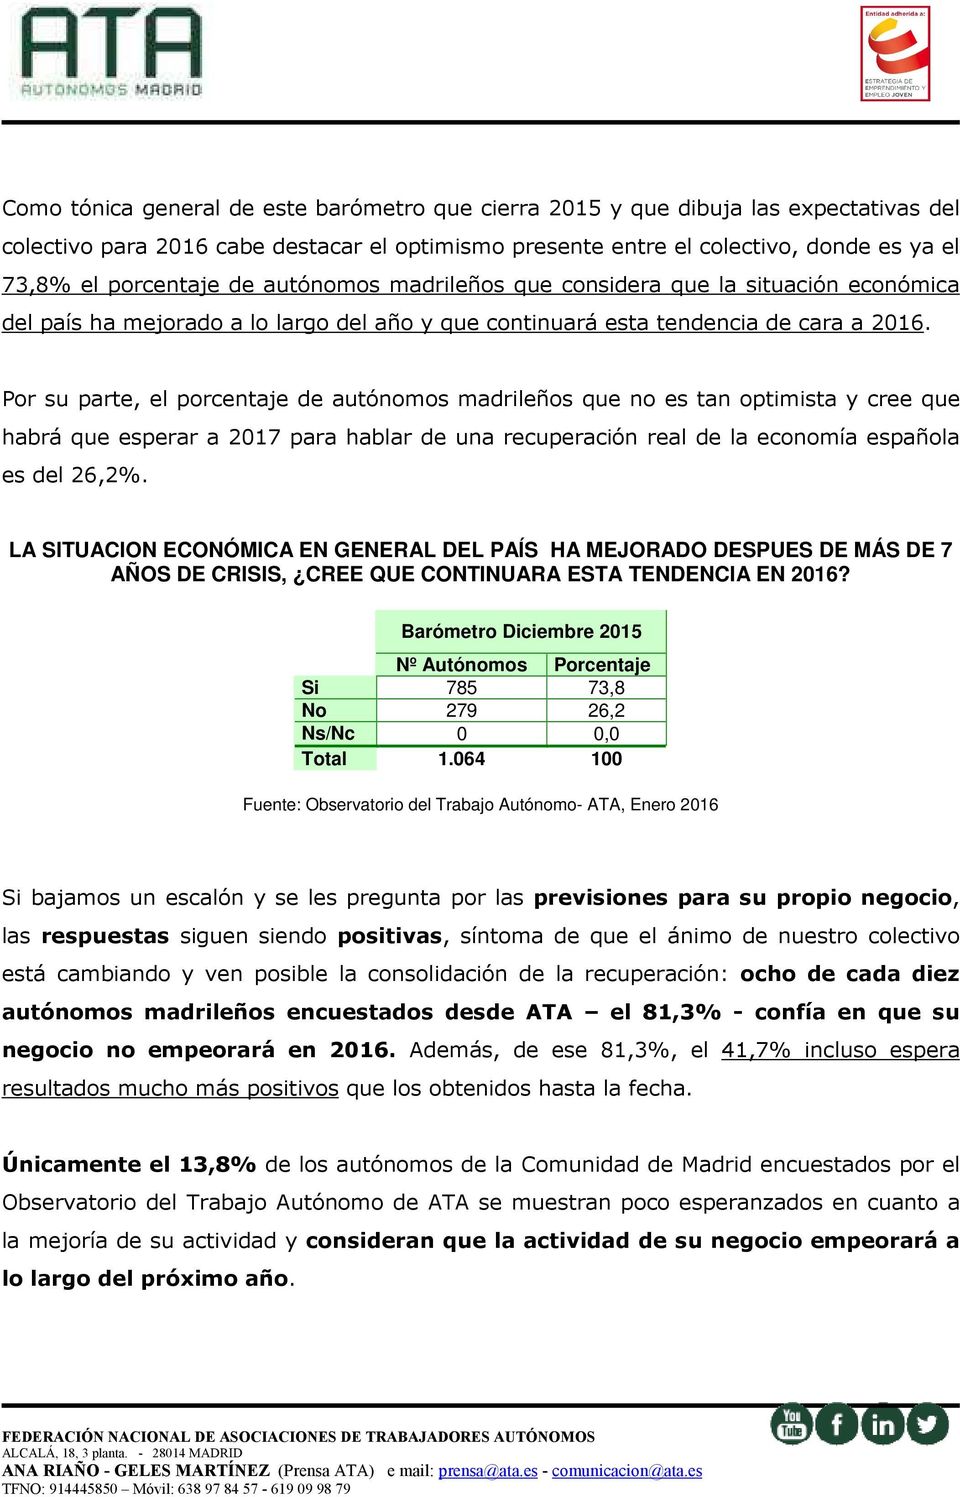 Por su parte, el porcentaje de autónomos madrileños que no es tan optimista y cree que habrá que esperar a 2017 para hablar de una recuperación real de la economía española es del 26,2%.